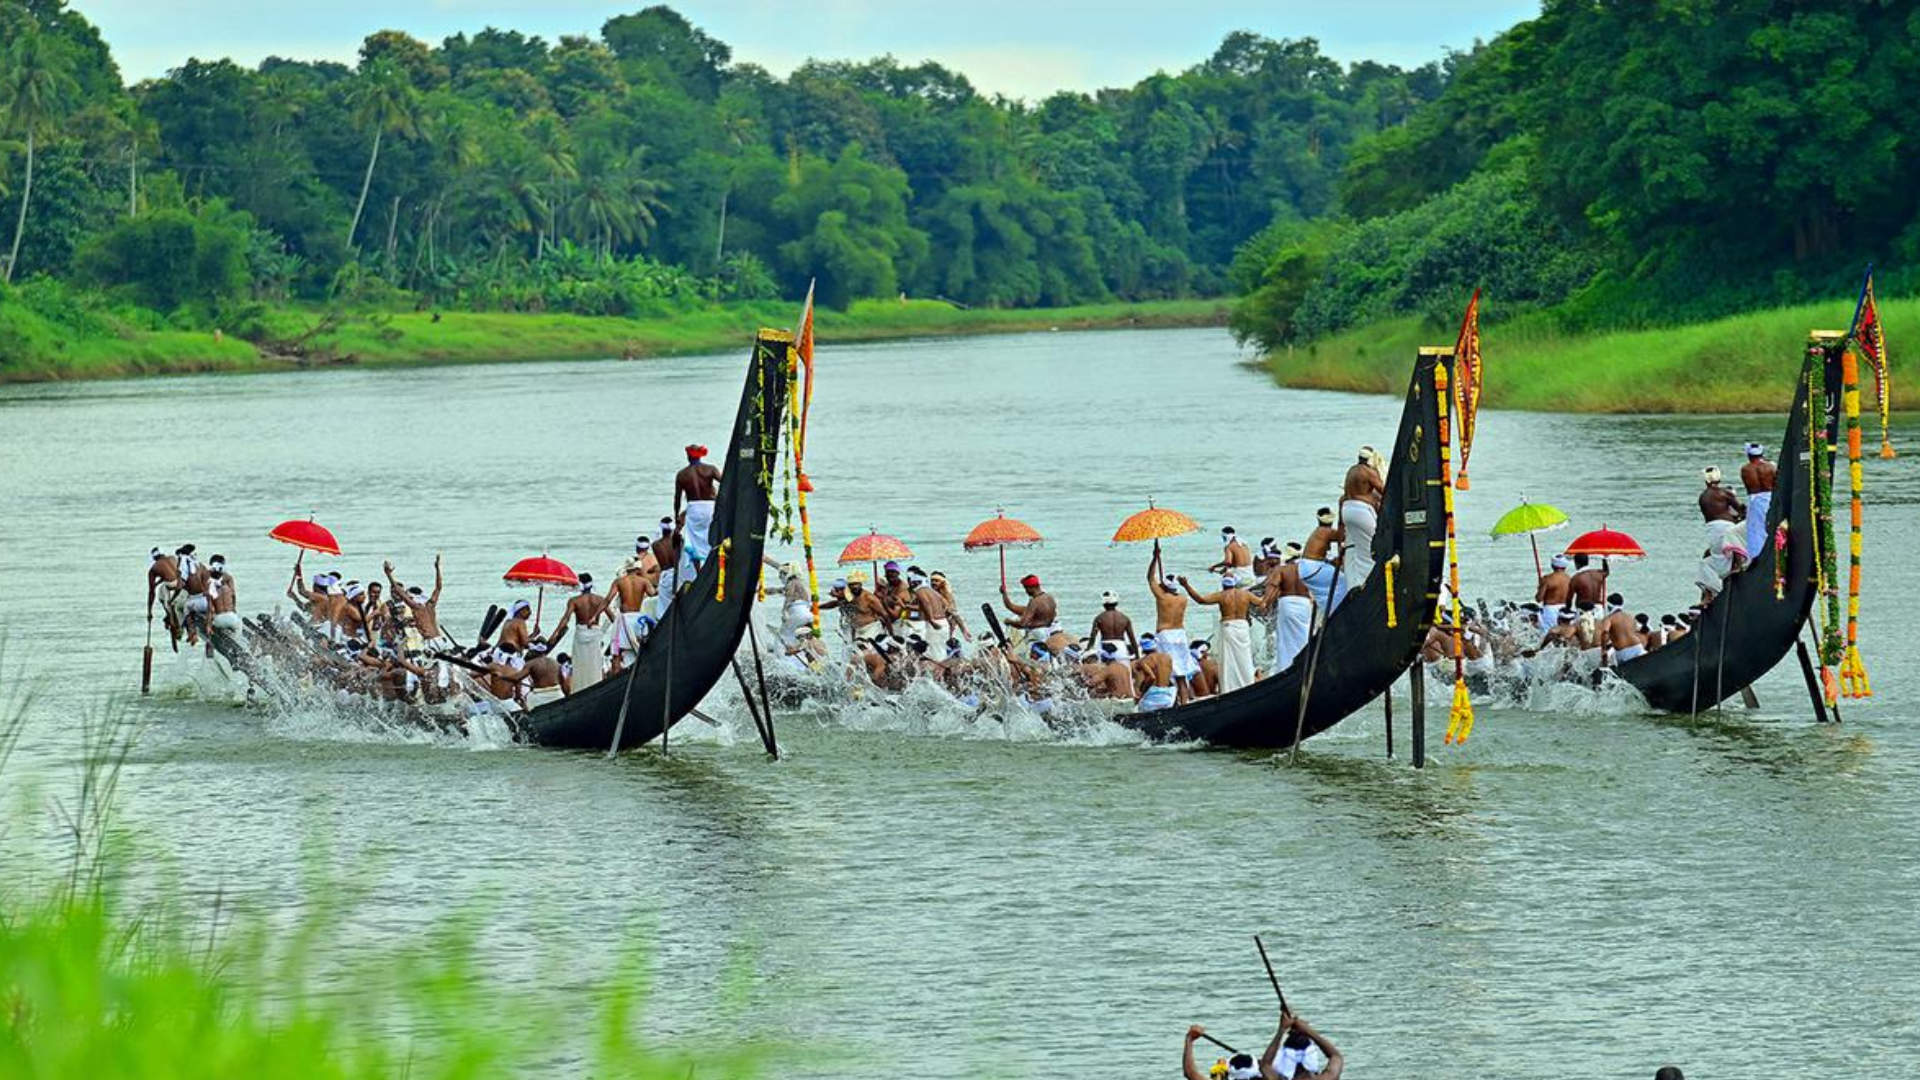 Kerala: Backwaters & Boat Races